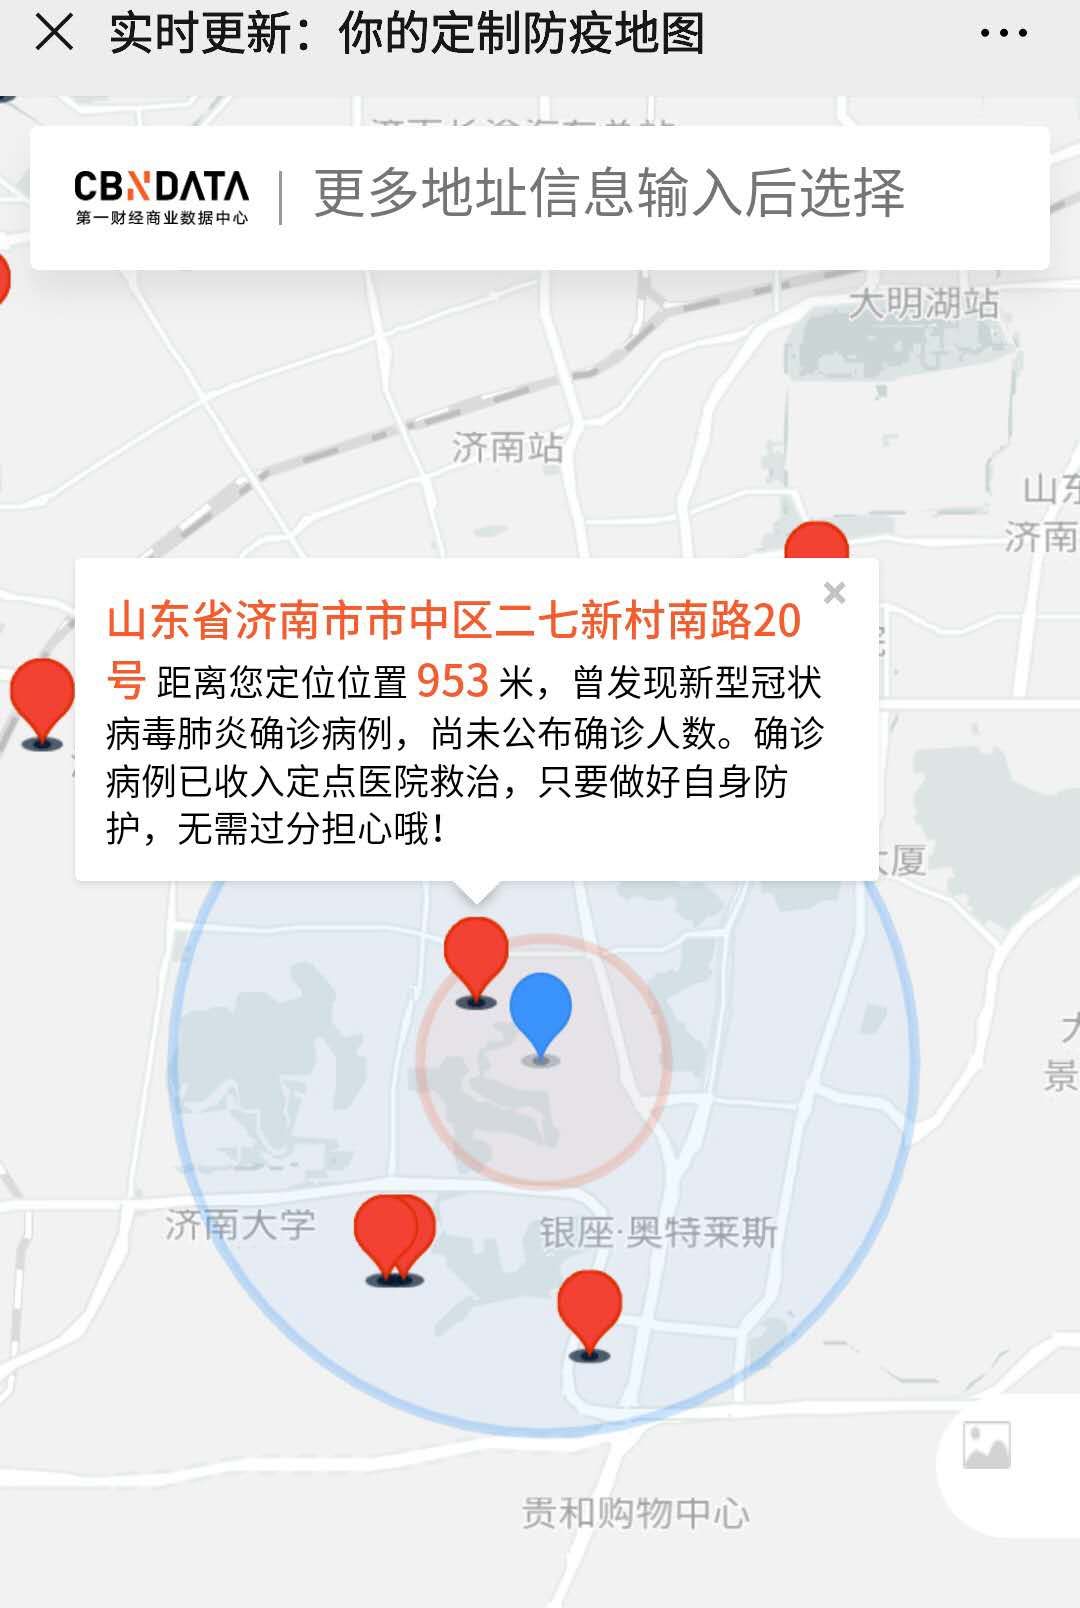 济南最新疫情地图图片